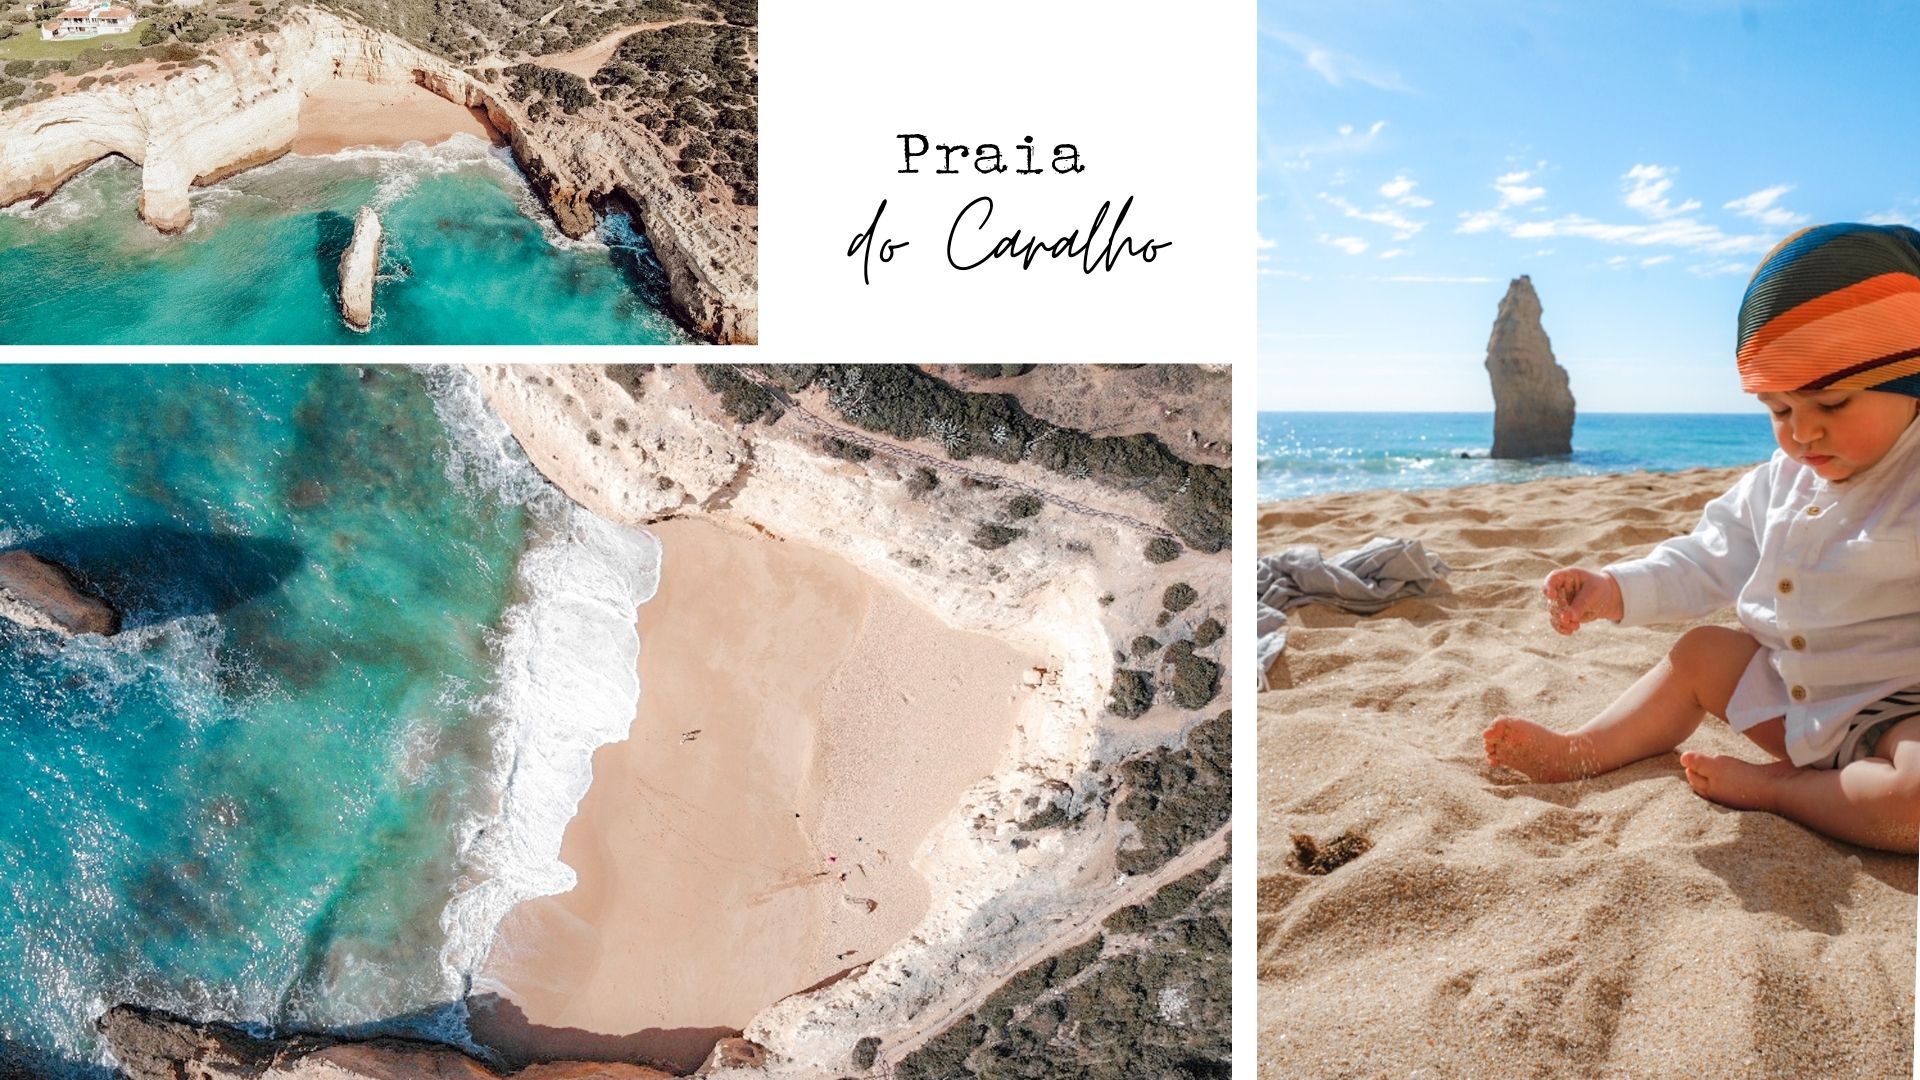 Praia do Cavalho plage en Algarve comment s'y rendre ?